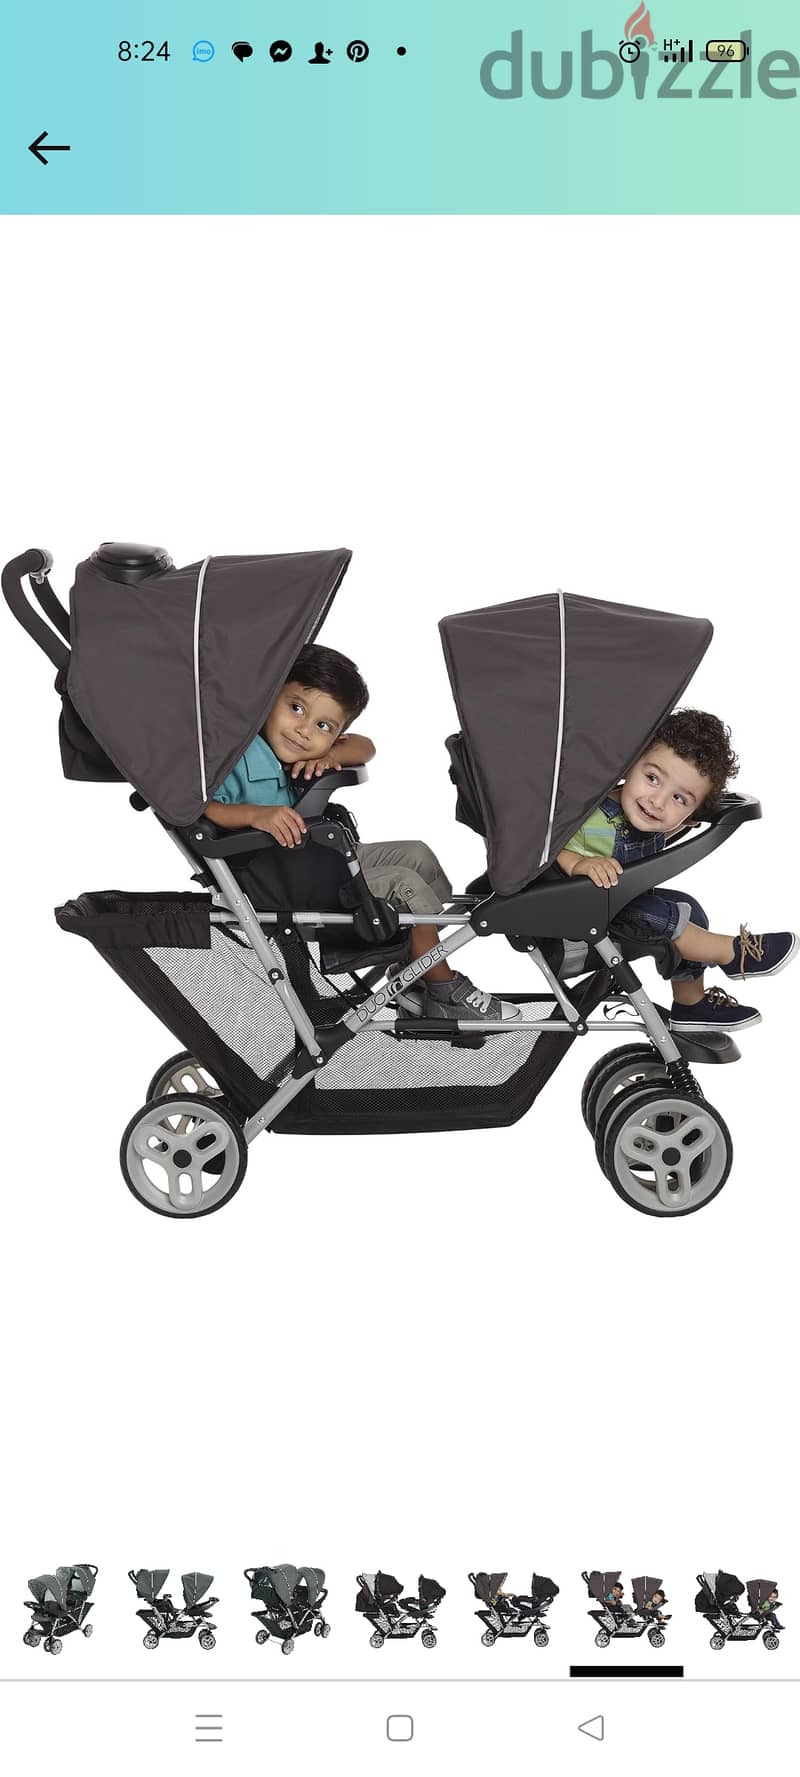 جراكو graco من امريكا عربية اطفال سترولر تؤام -twin graco stroller fro 1